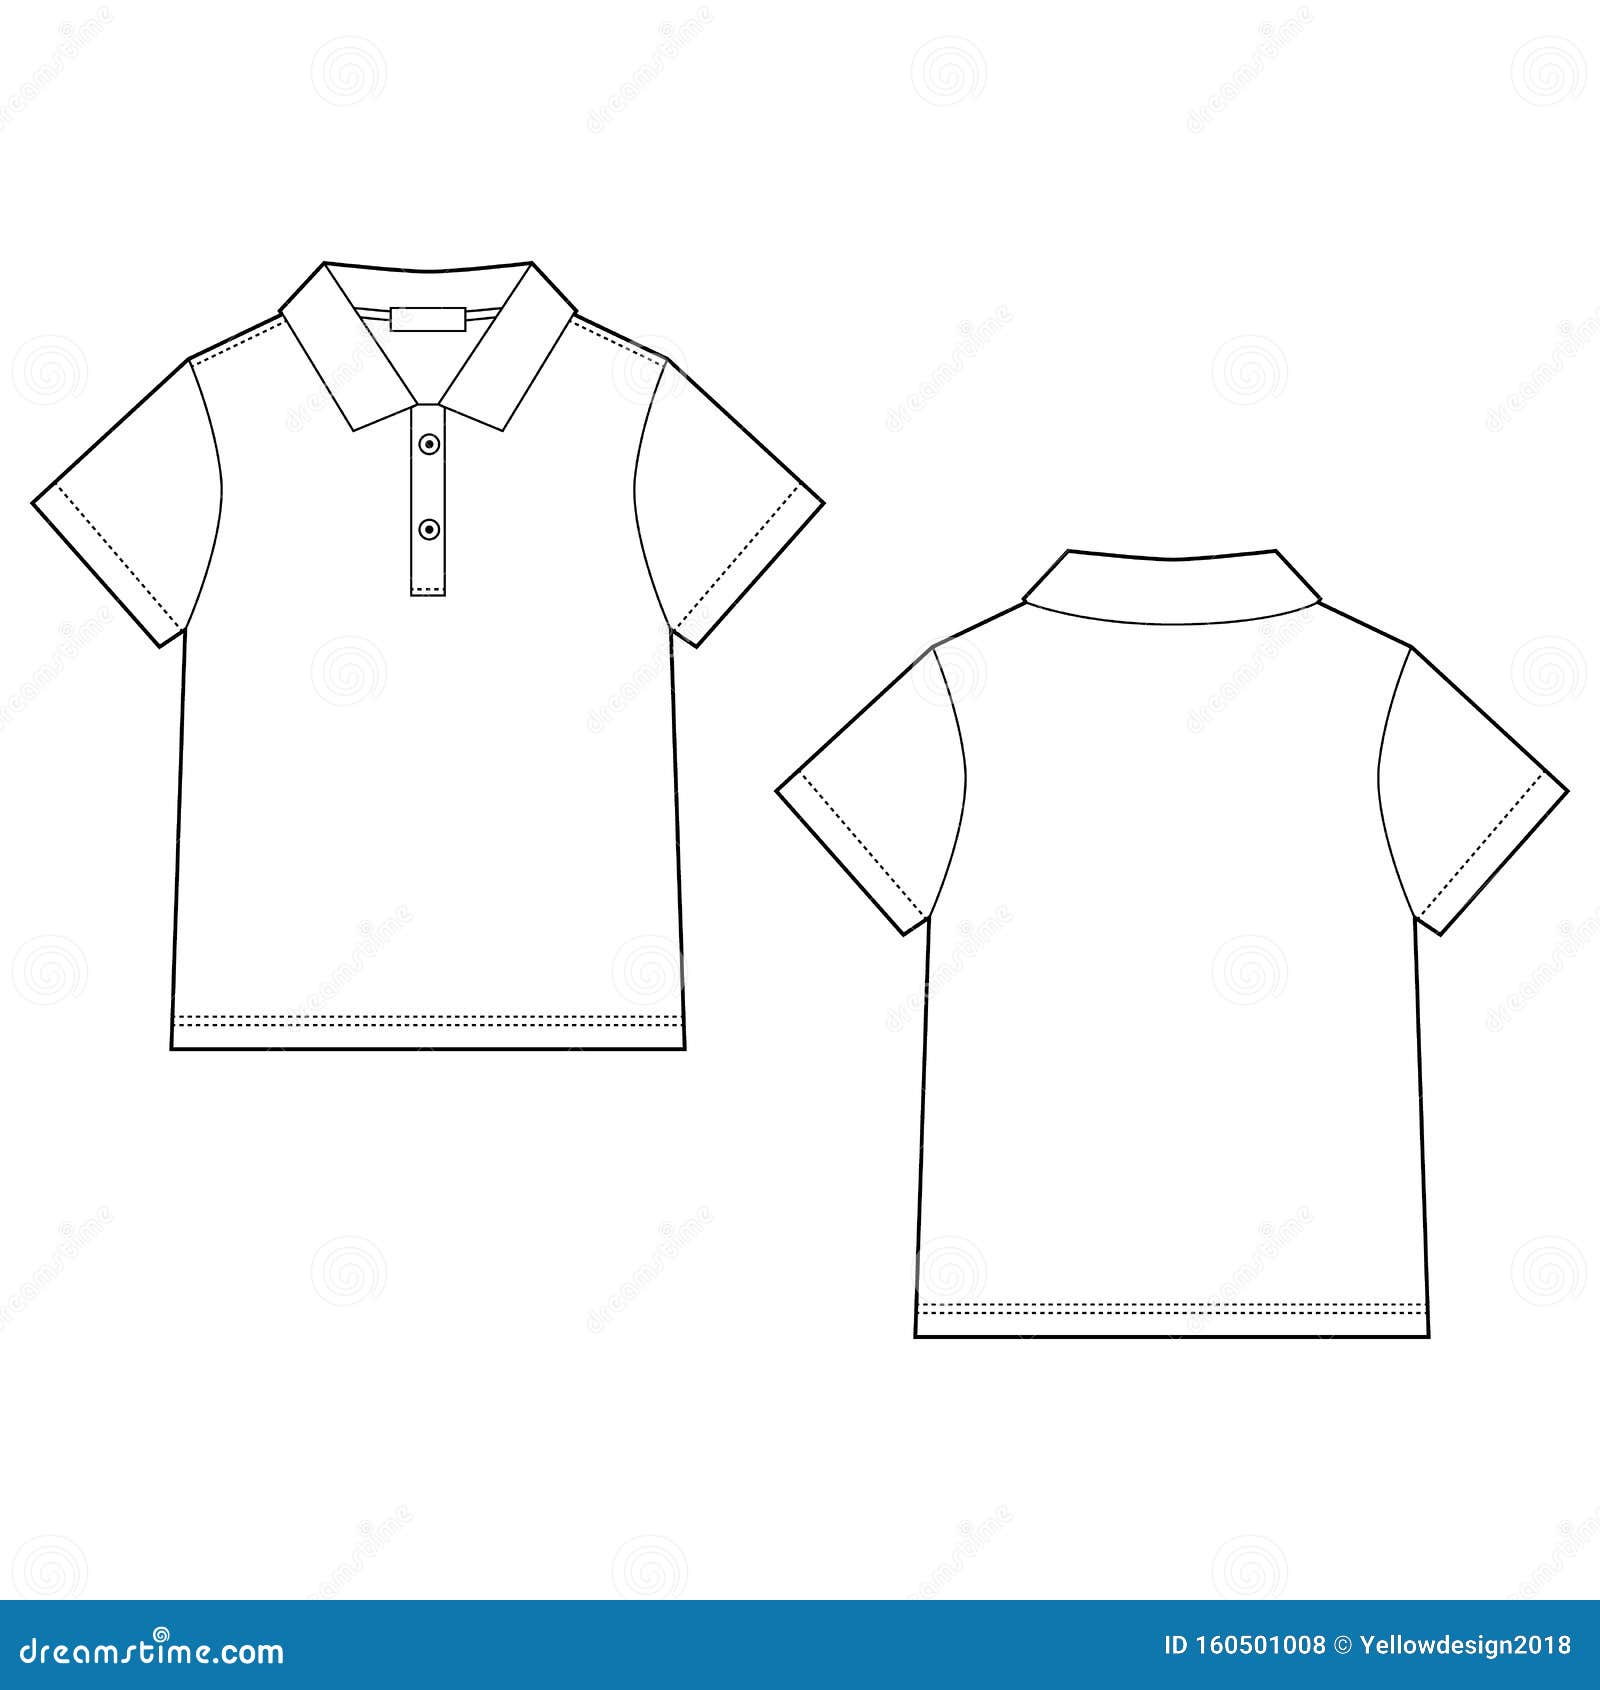 Tshirt design templates sketch Royalty Free Vector Image